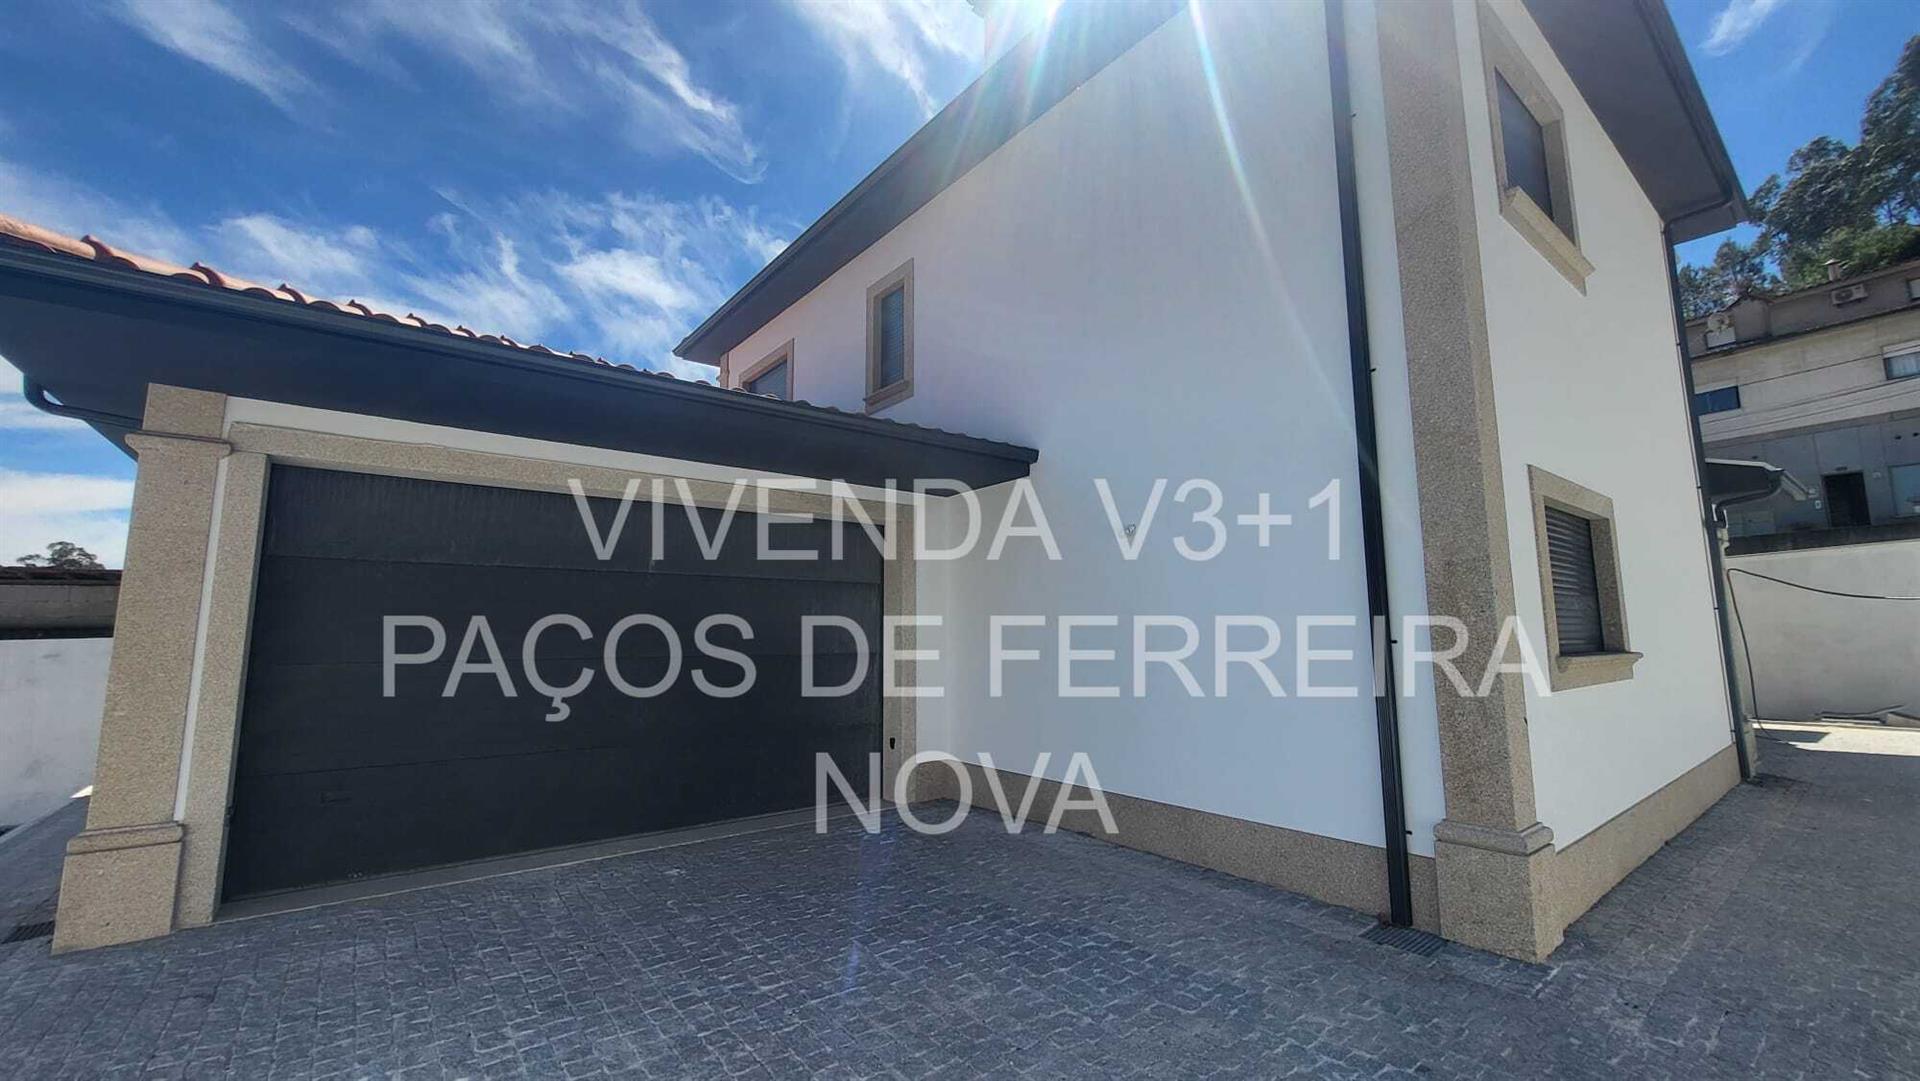 فيلا V3 + 1 باكوس دي فيريرا – 268m2 - جديد